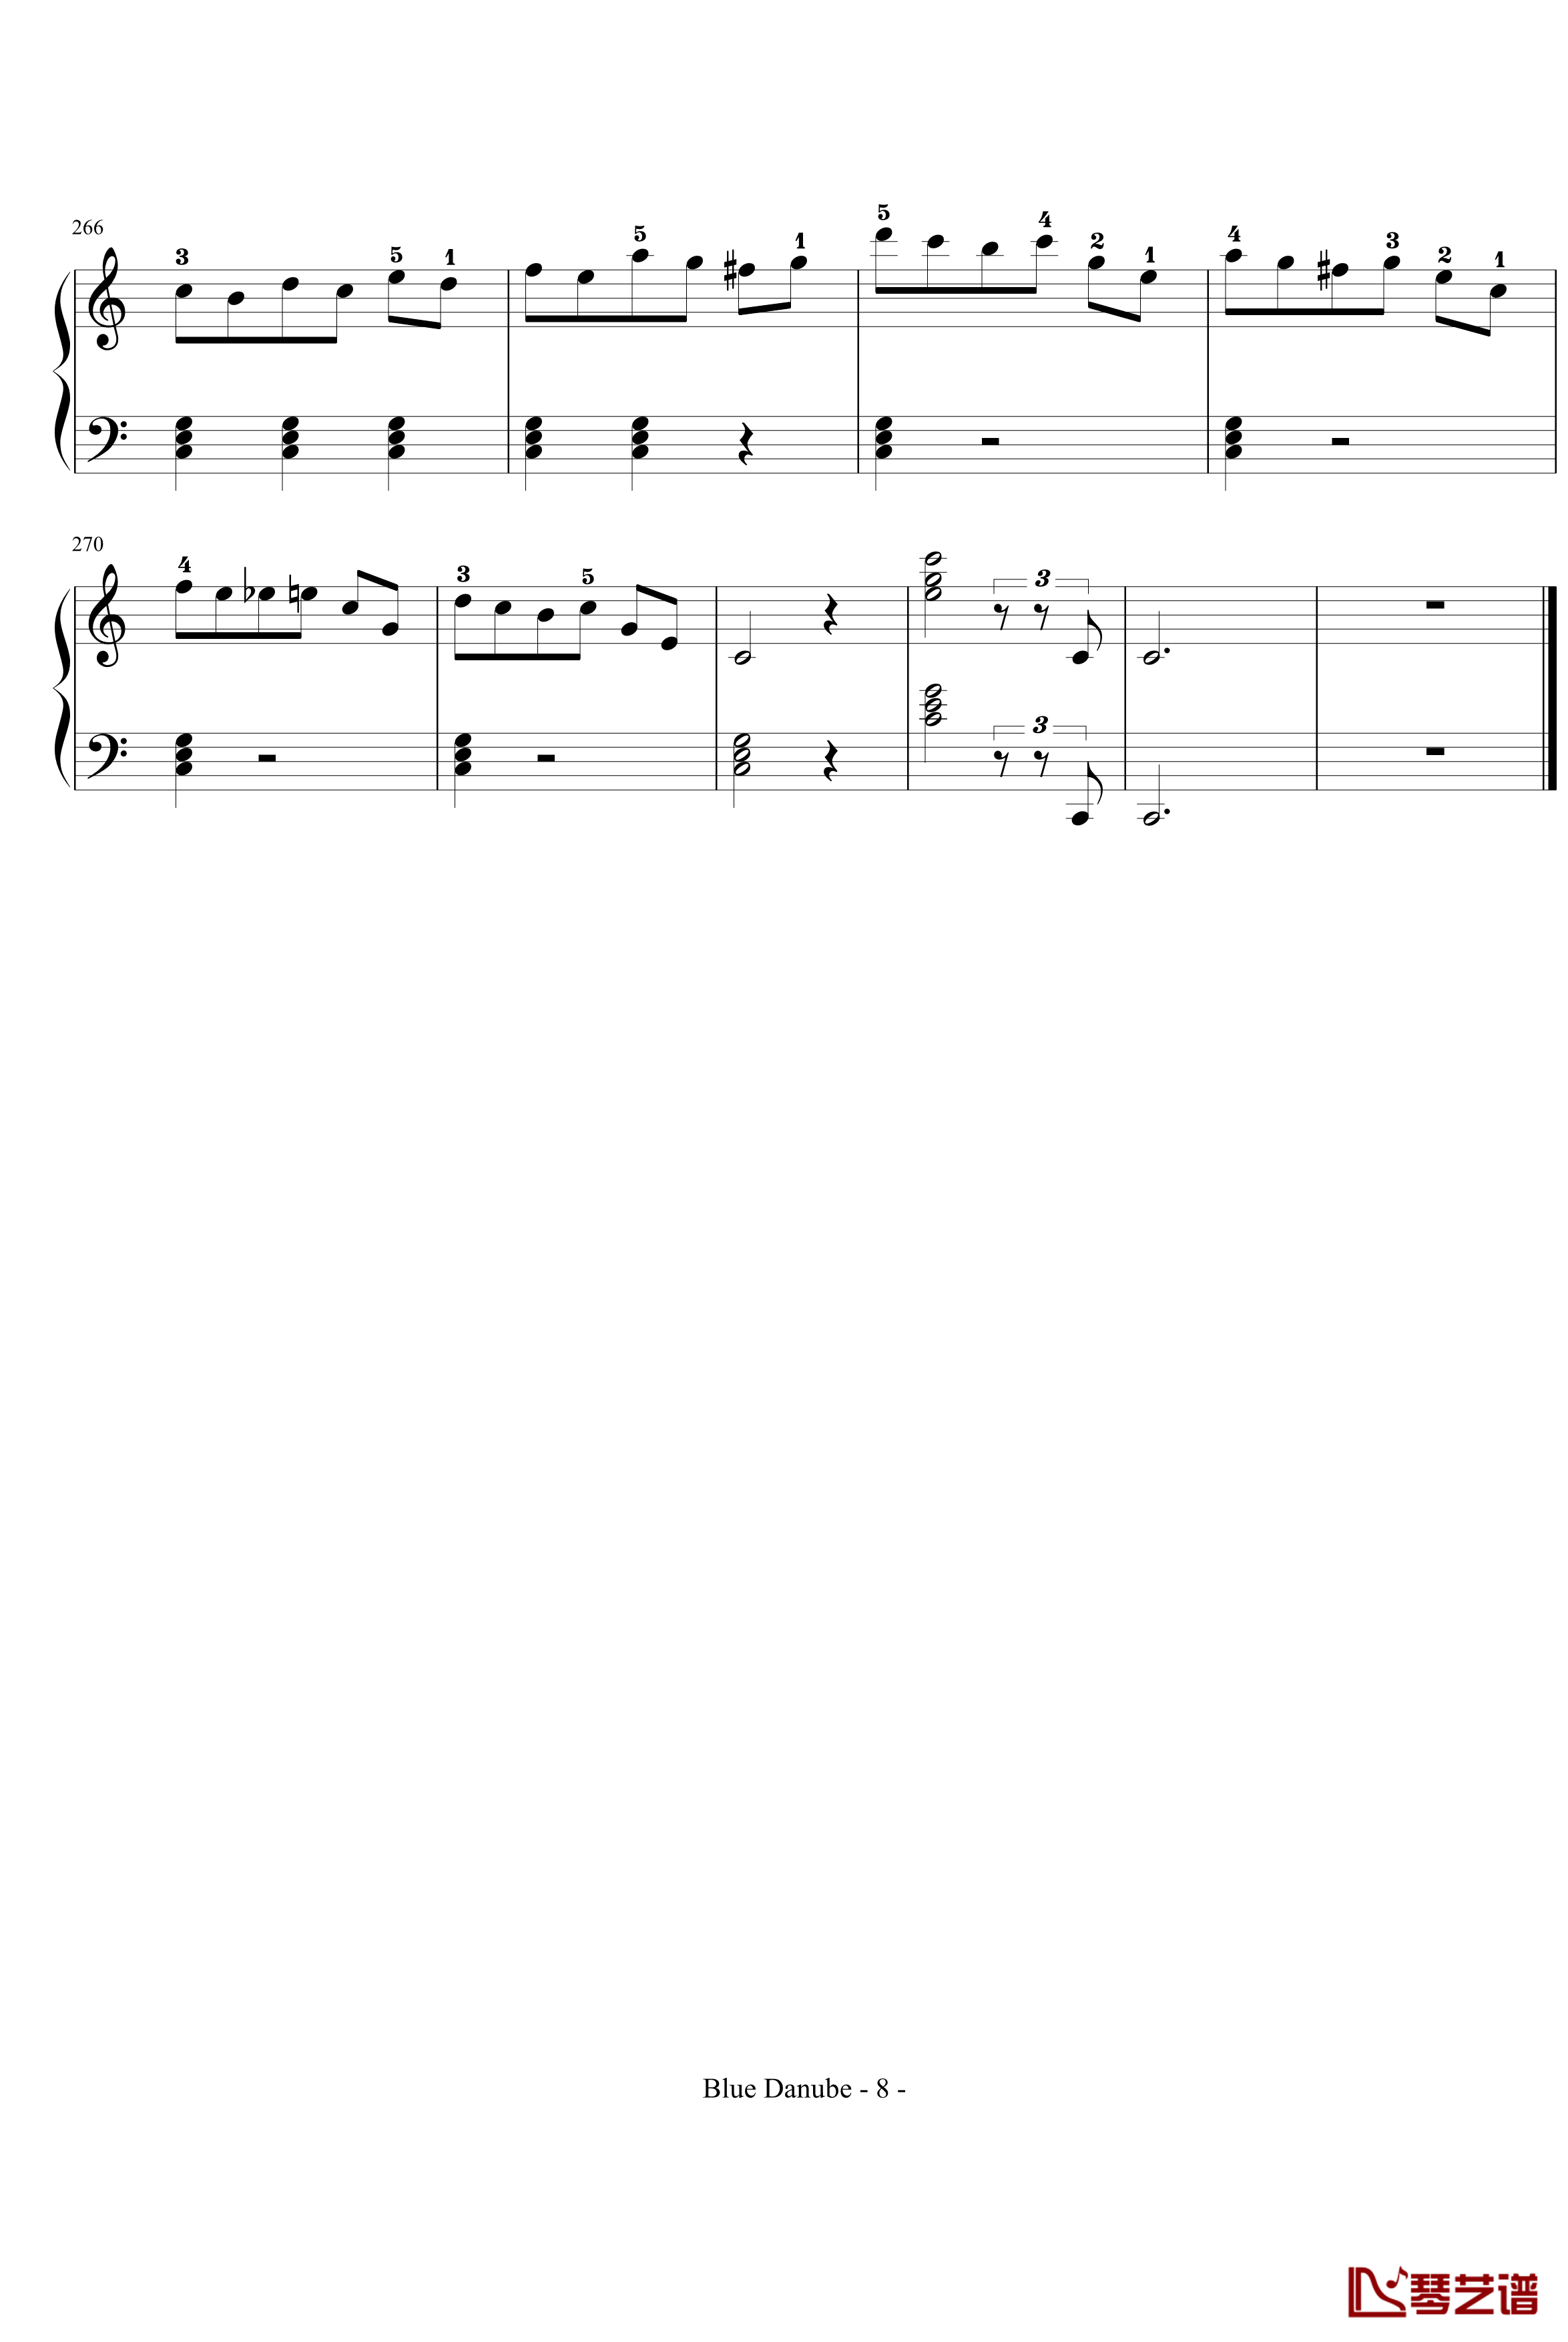 蓝色多瑙河钢琴谱-完整-带指法简化-约翰·斯特劳斯8